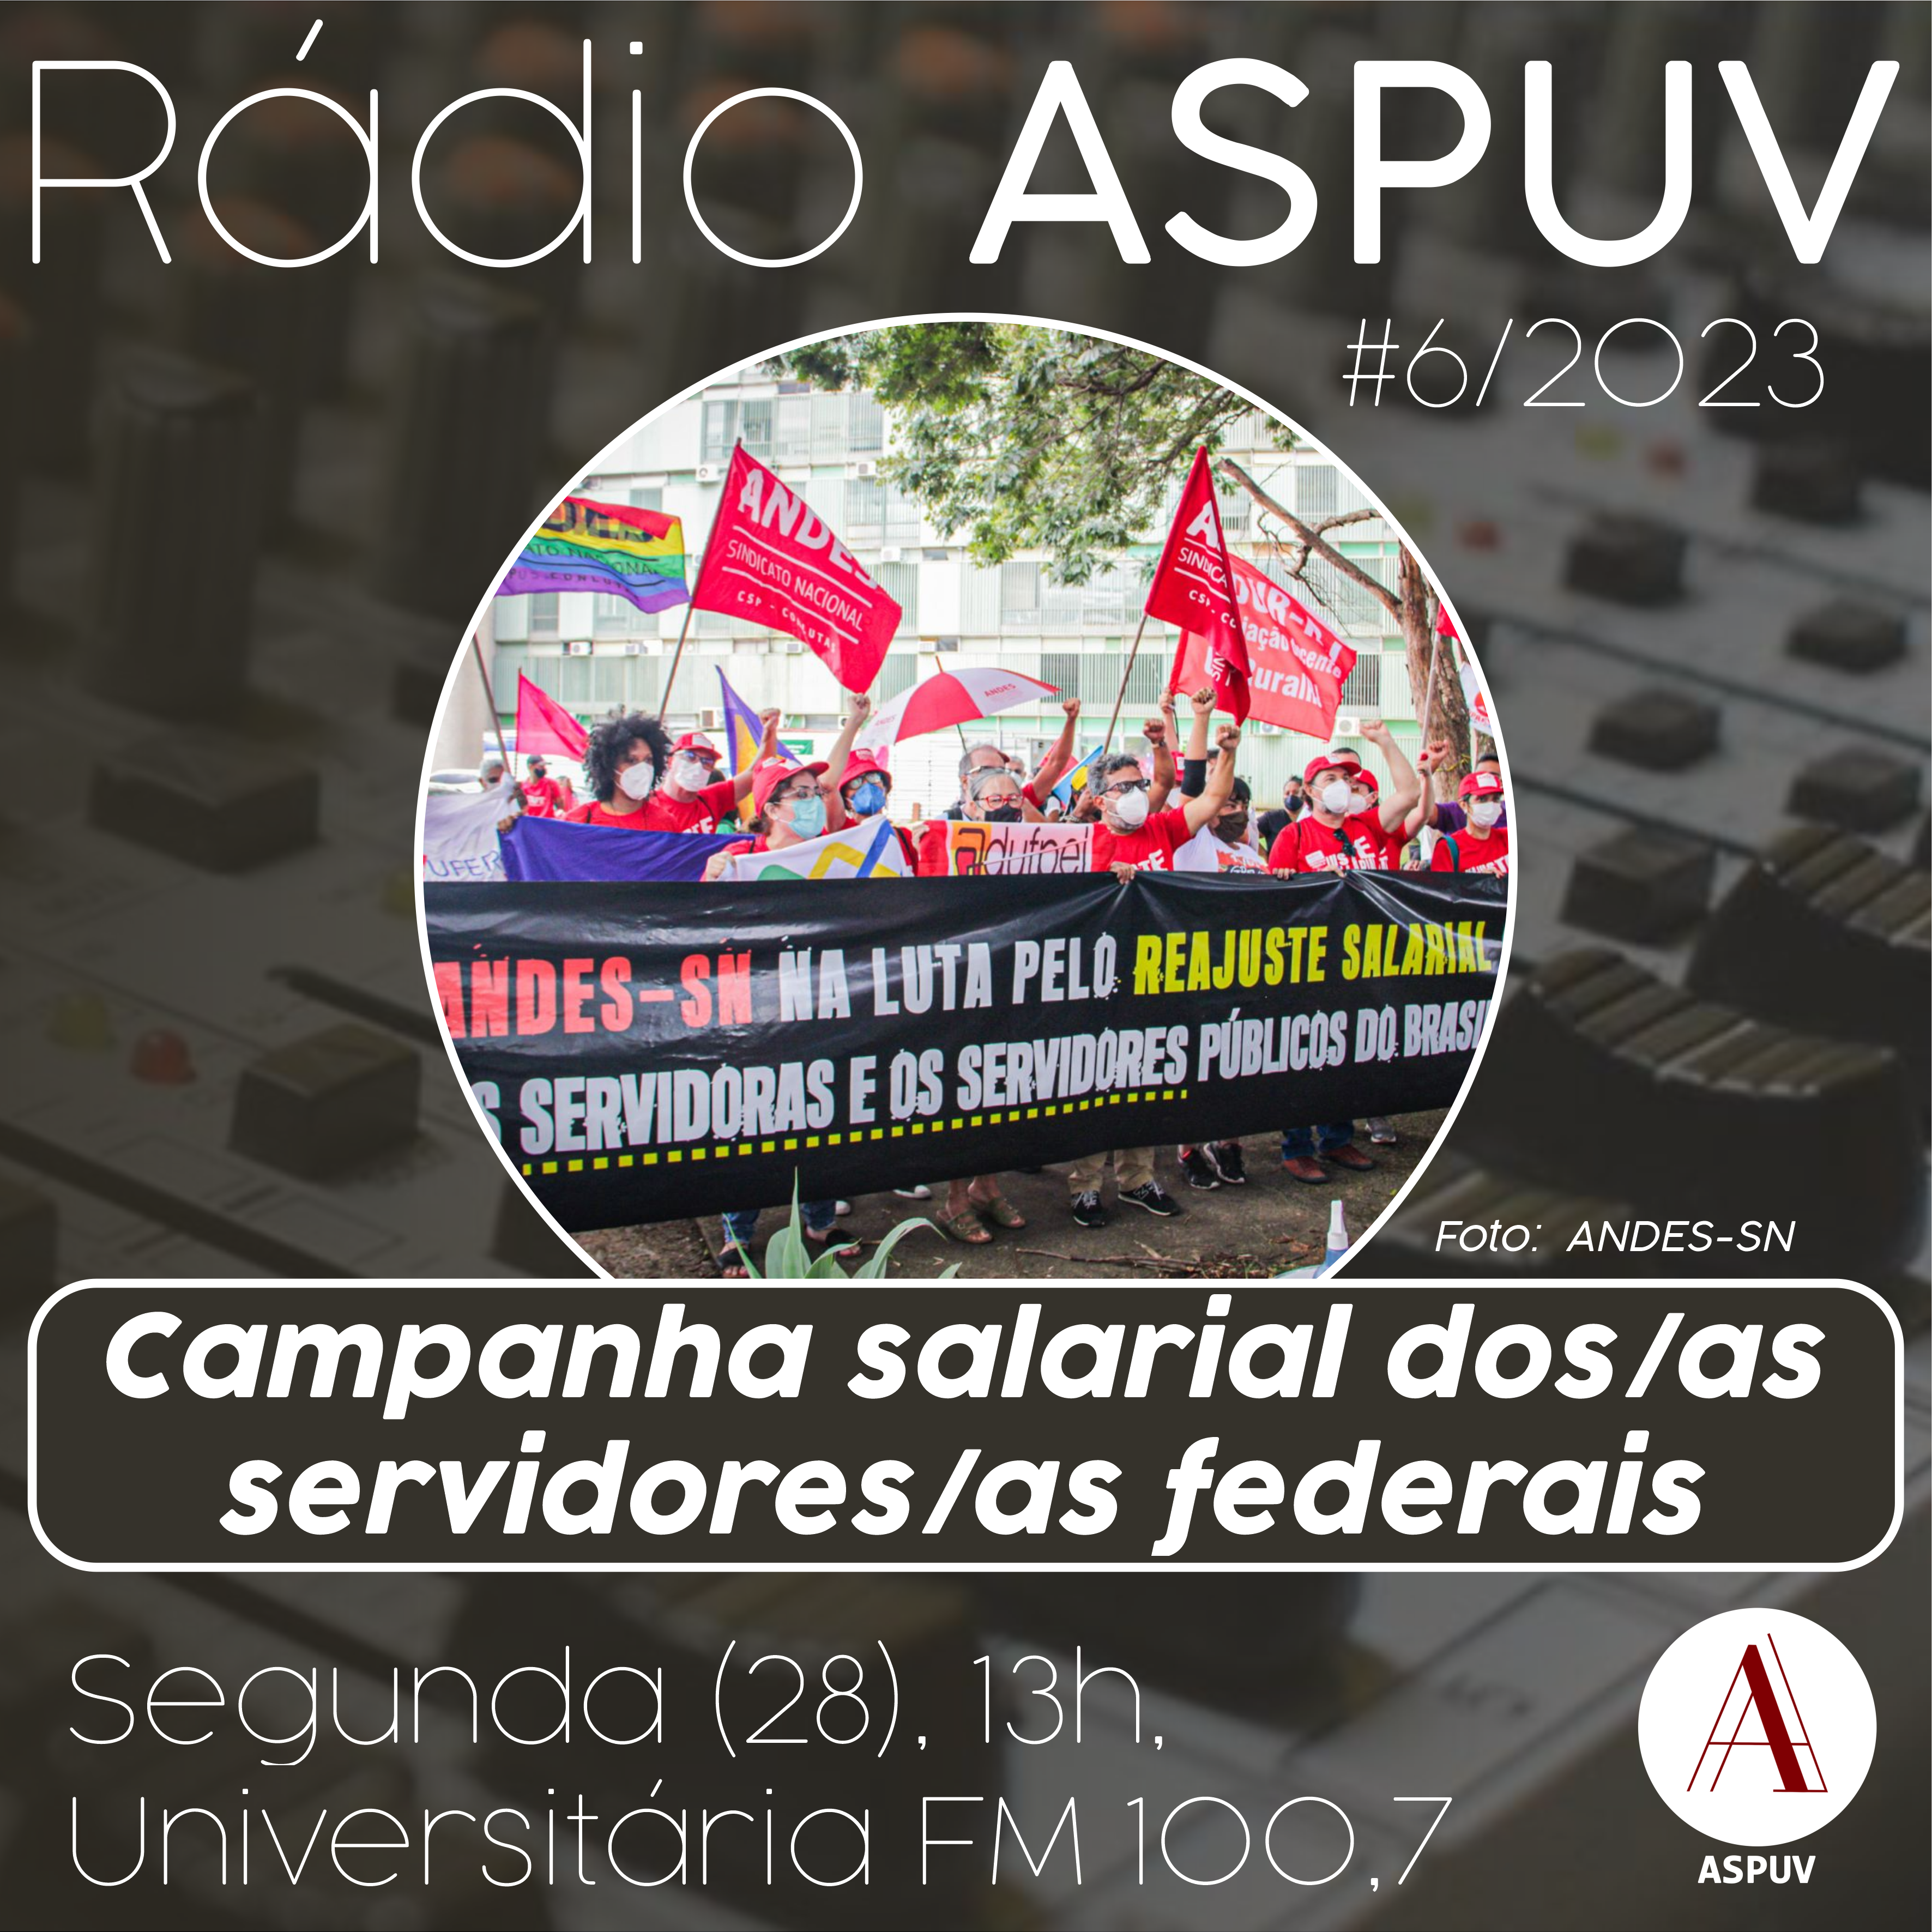 Rádio ASPUV #6/2023 Campanha salarial dos/as servidores/as federais